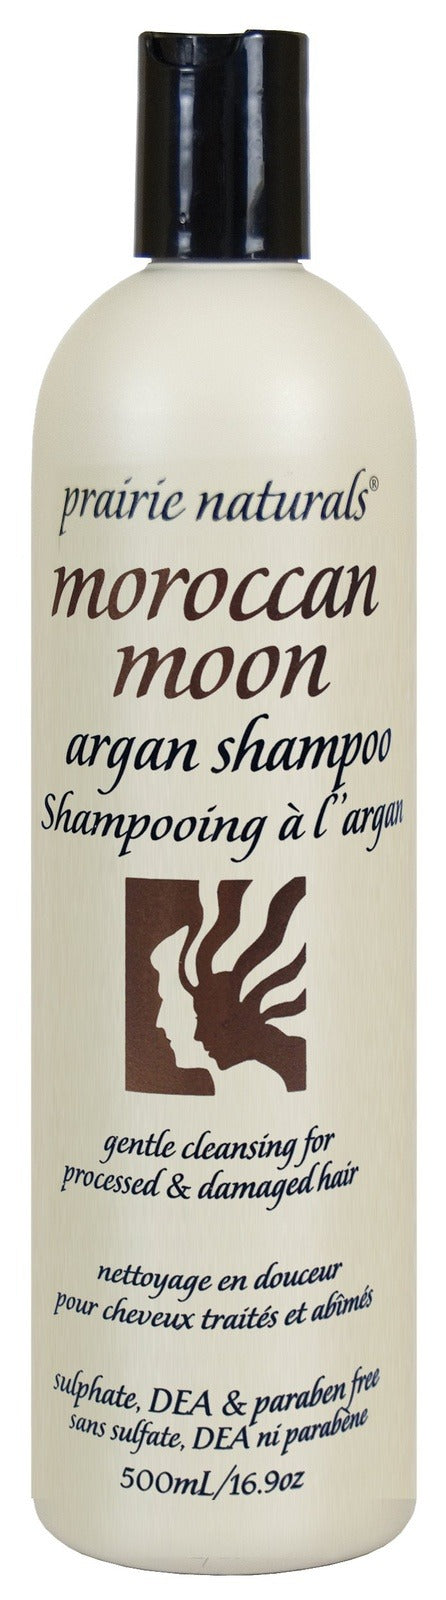 Prairie Naturals Moroccan Moon Argan Shampoo 500 mL Image 1